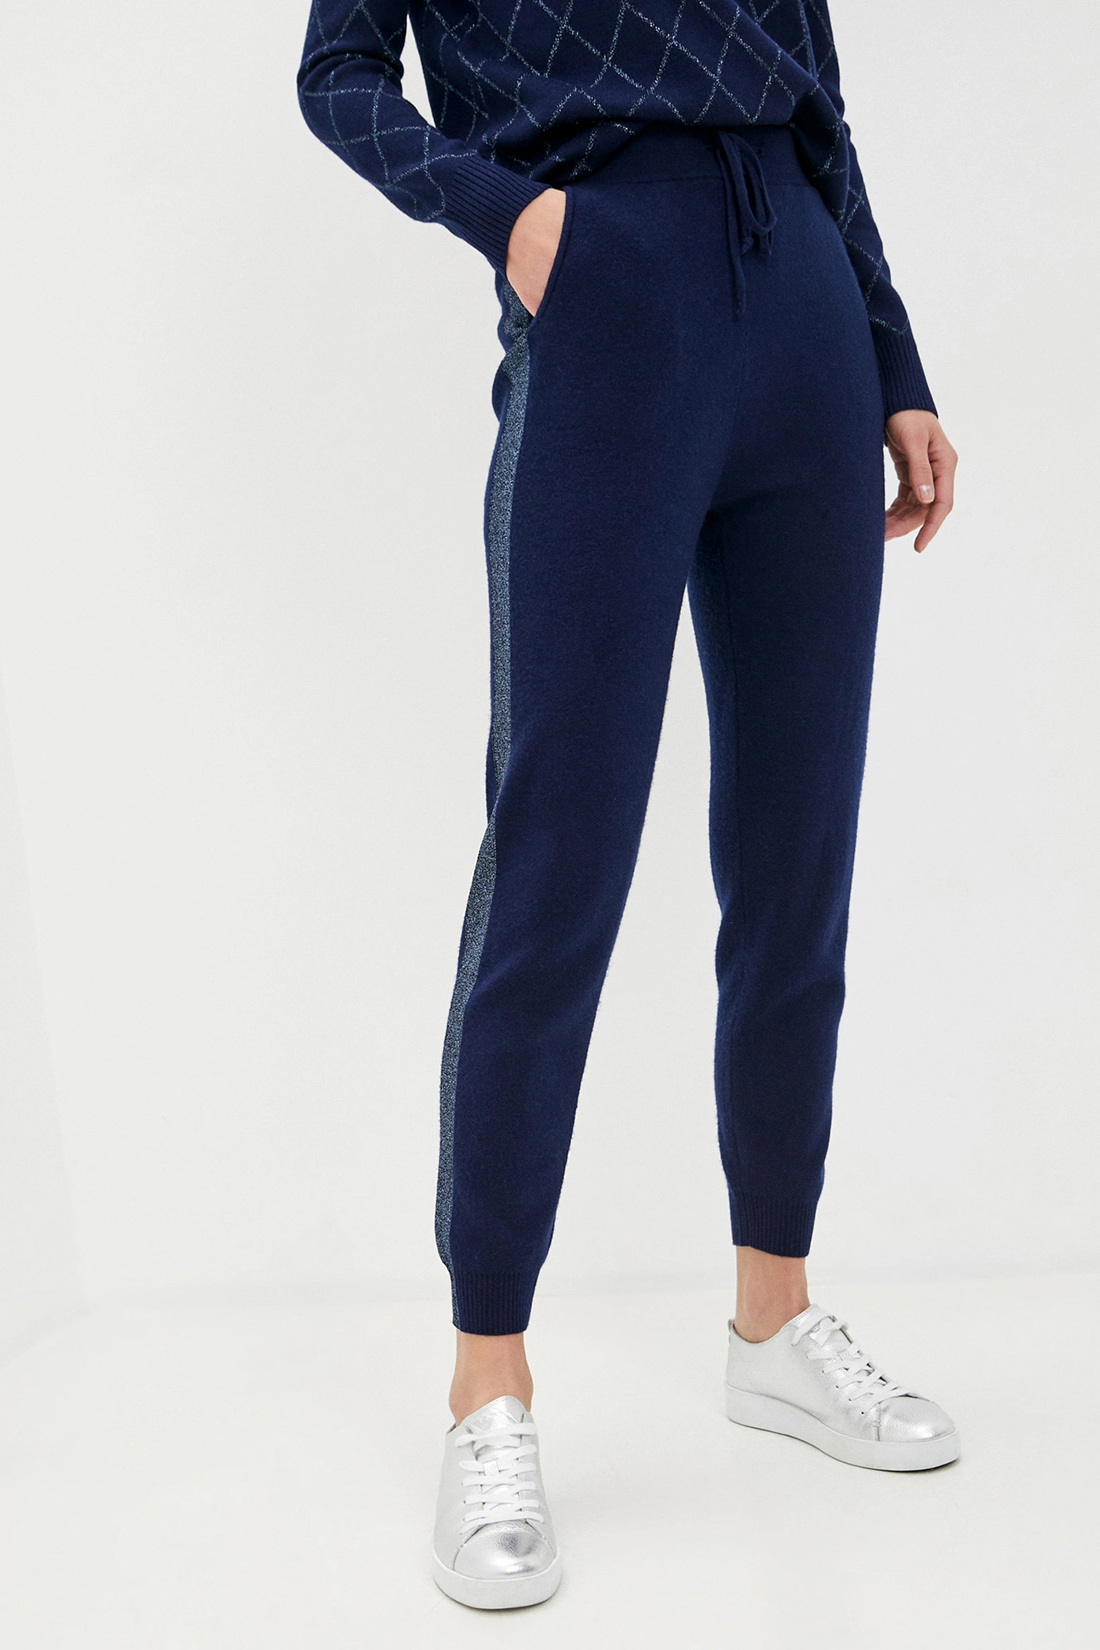 Спортивные брюки женские Baon B290532 синие XS